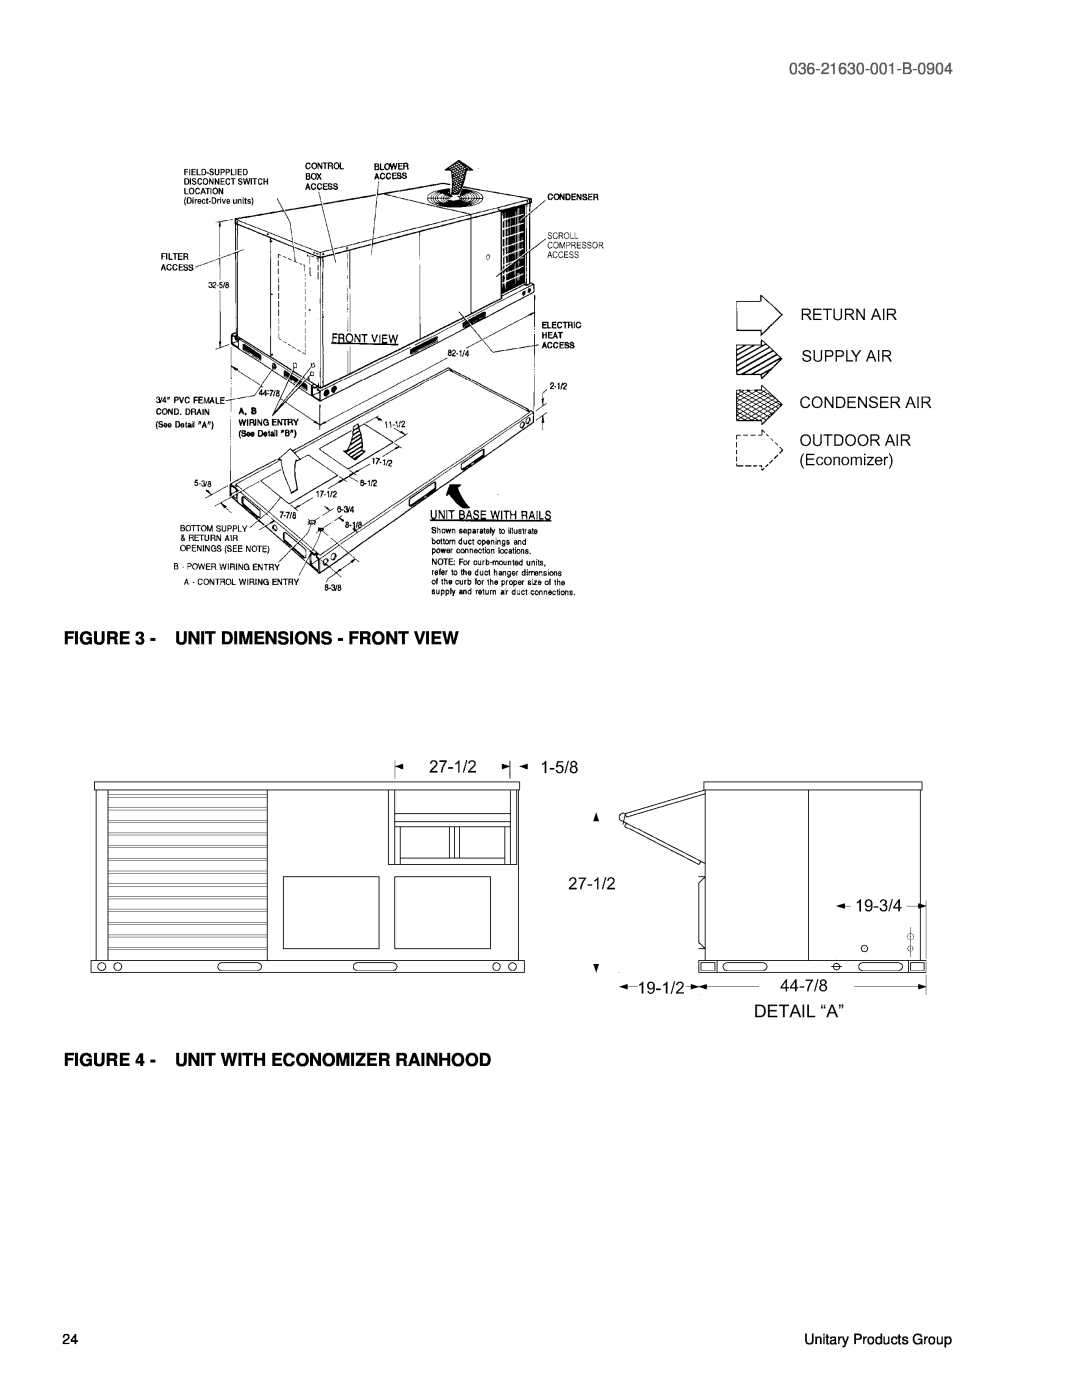 York BP 072 warranty Unit Dimensions - Front View, Detail “A”, Unit With Economizer Rainhood, 036-21630-001-B-0904 